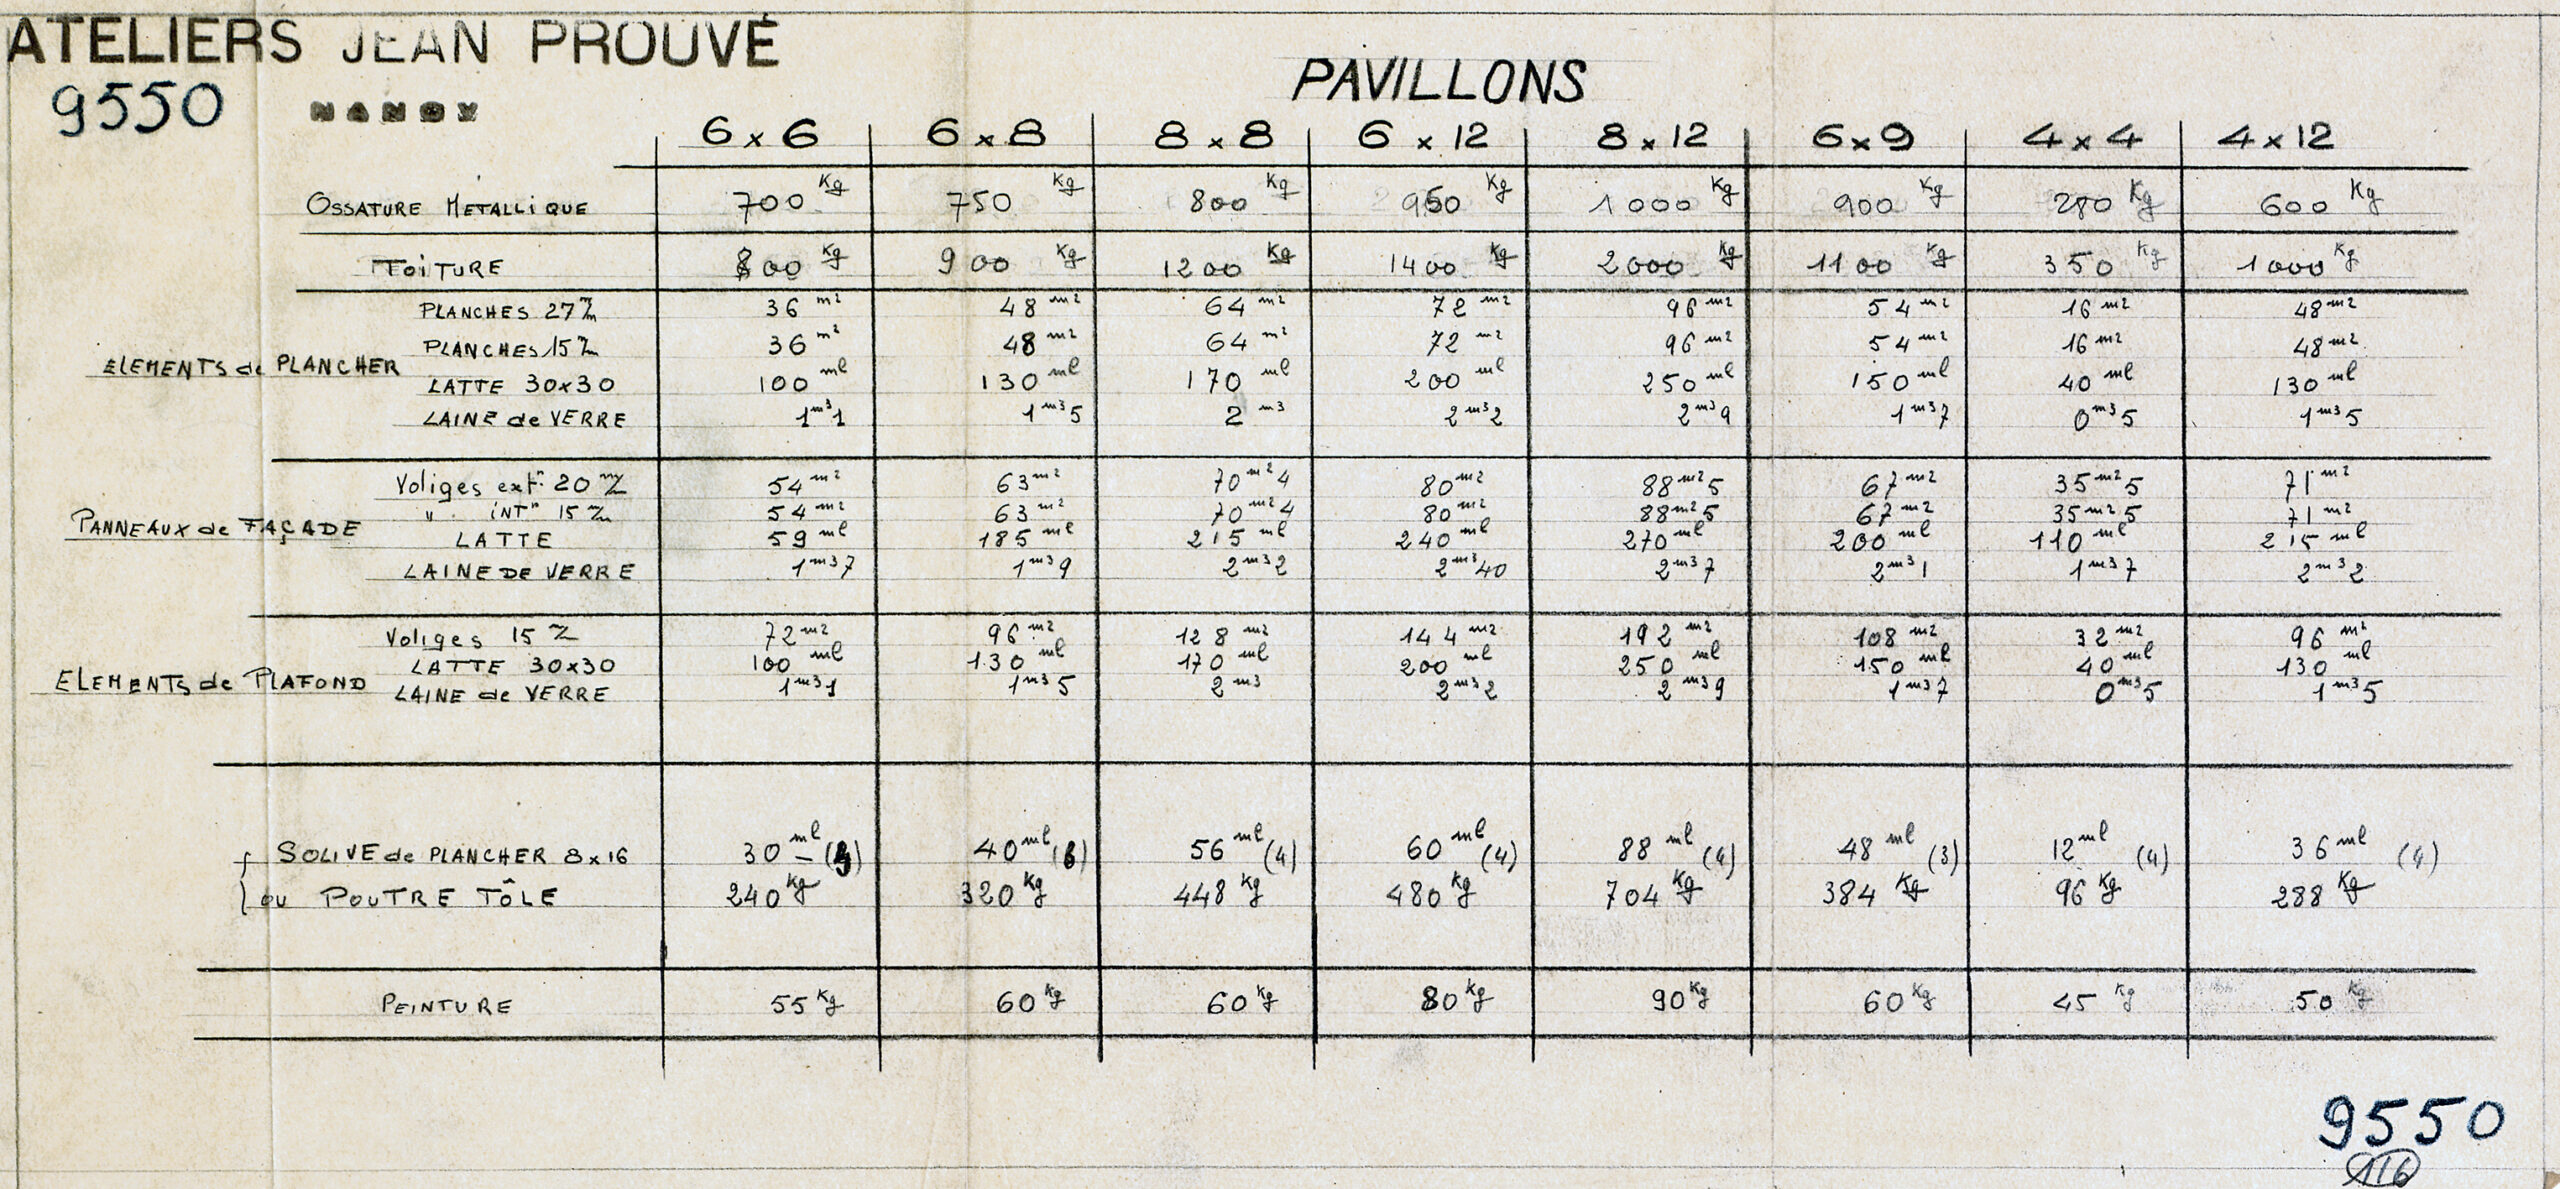 Ateliers Jean Prouvé. « Pavillons », nomenclature et masse des éléments constituant les différents types de pavillons démontables, document n° 9550, 19 janvier 1945.